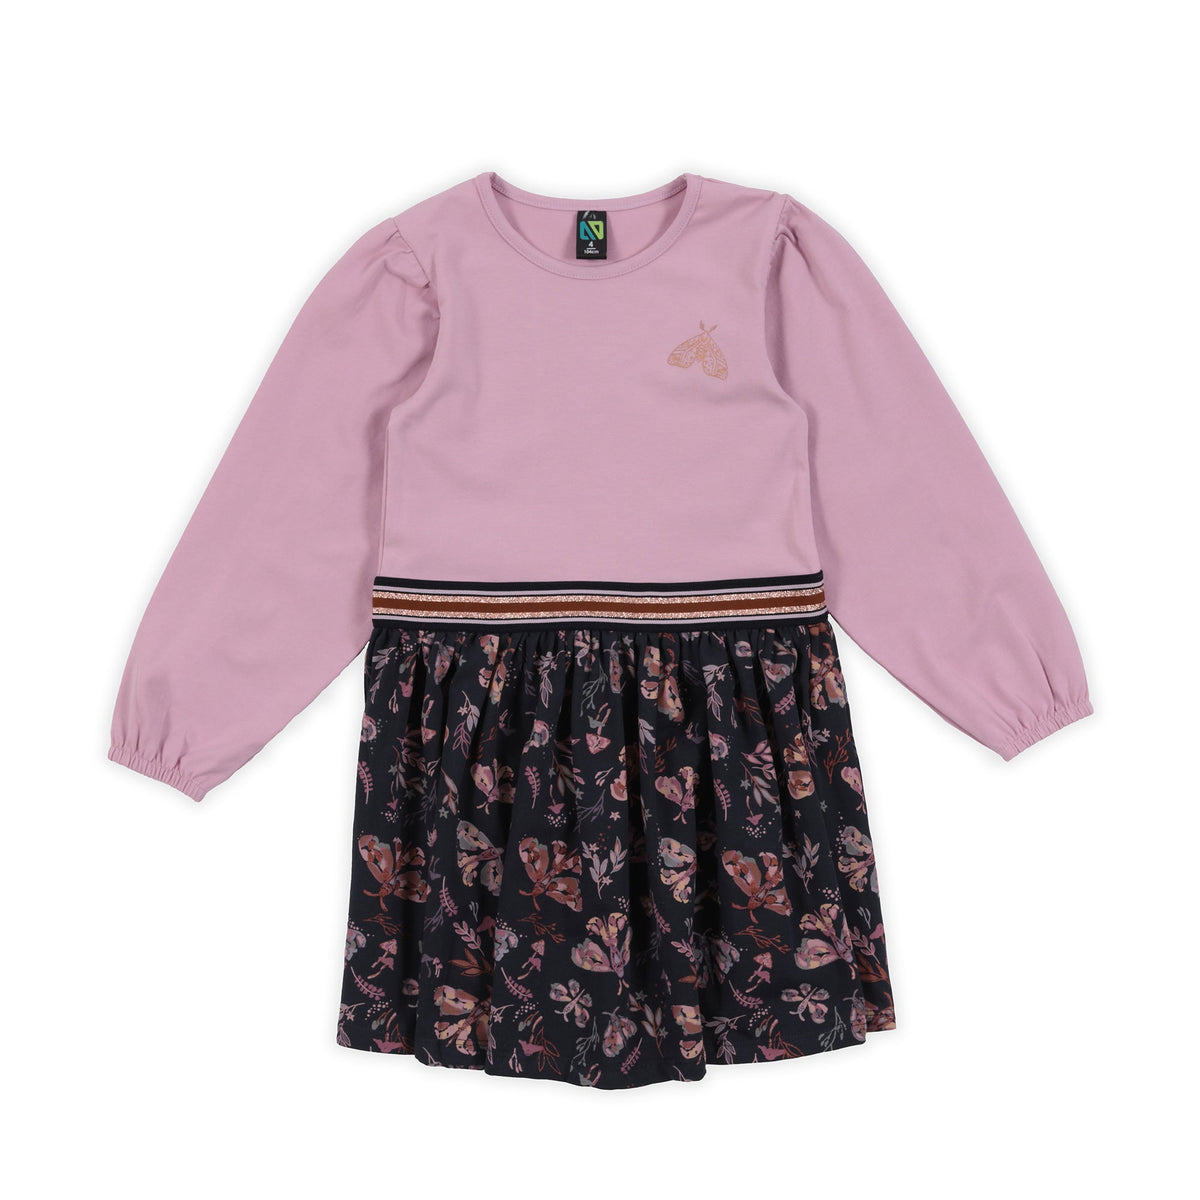 Robe pour enfant fille par Nanö | F2302-01 Lilas | Boutique Flos, vêtements mode pour bébés et enfants